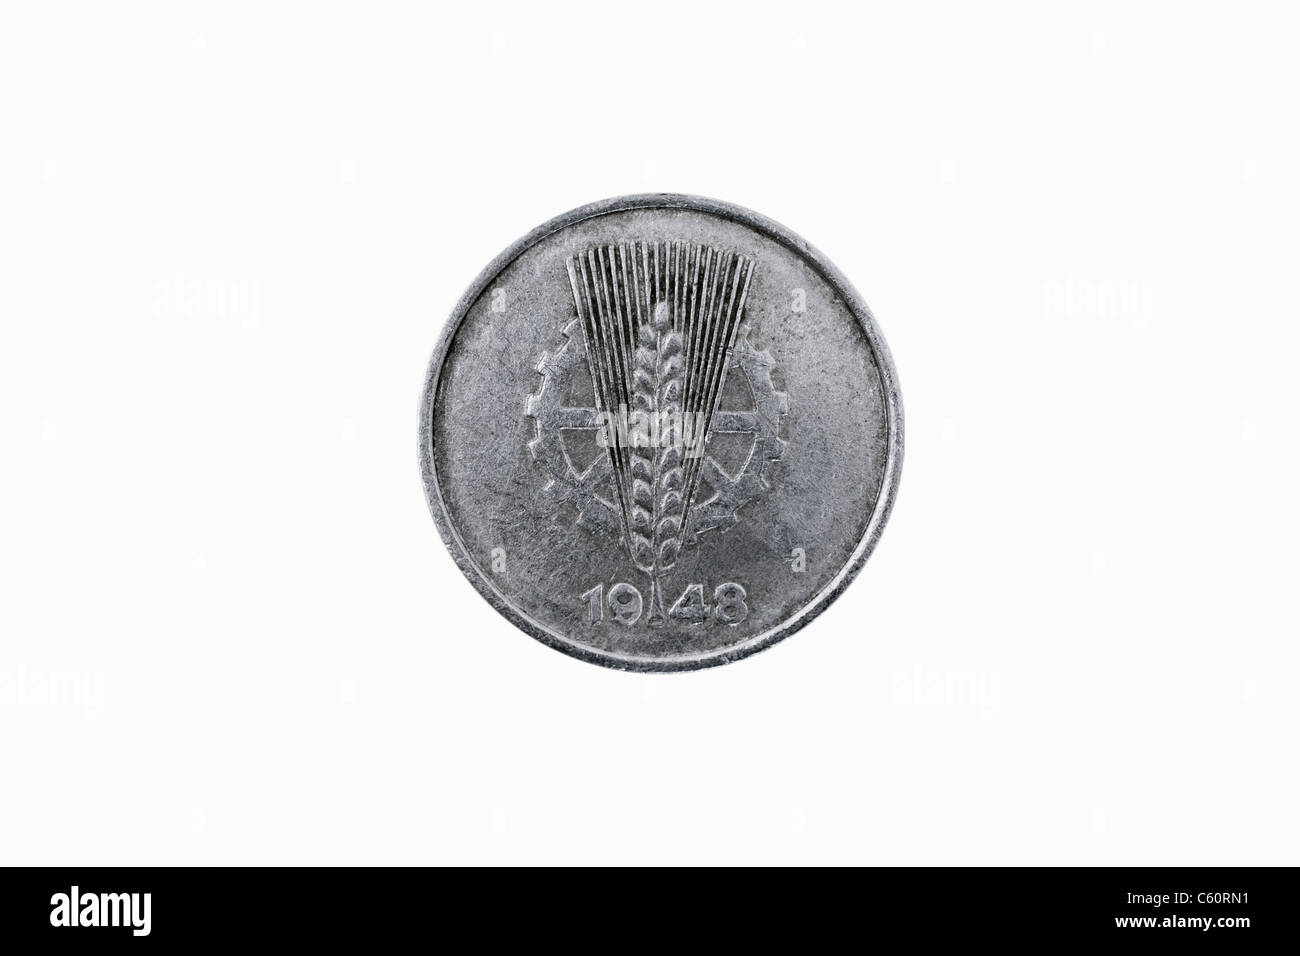 Detalle de una foto de 1 Pfennig moneda de la zona soviética de ocupación desde el año 1948 Foto de stock